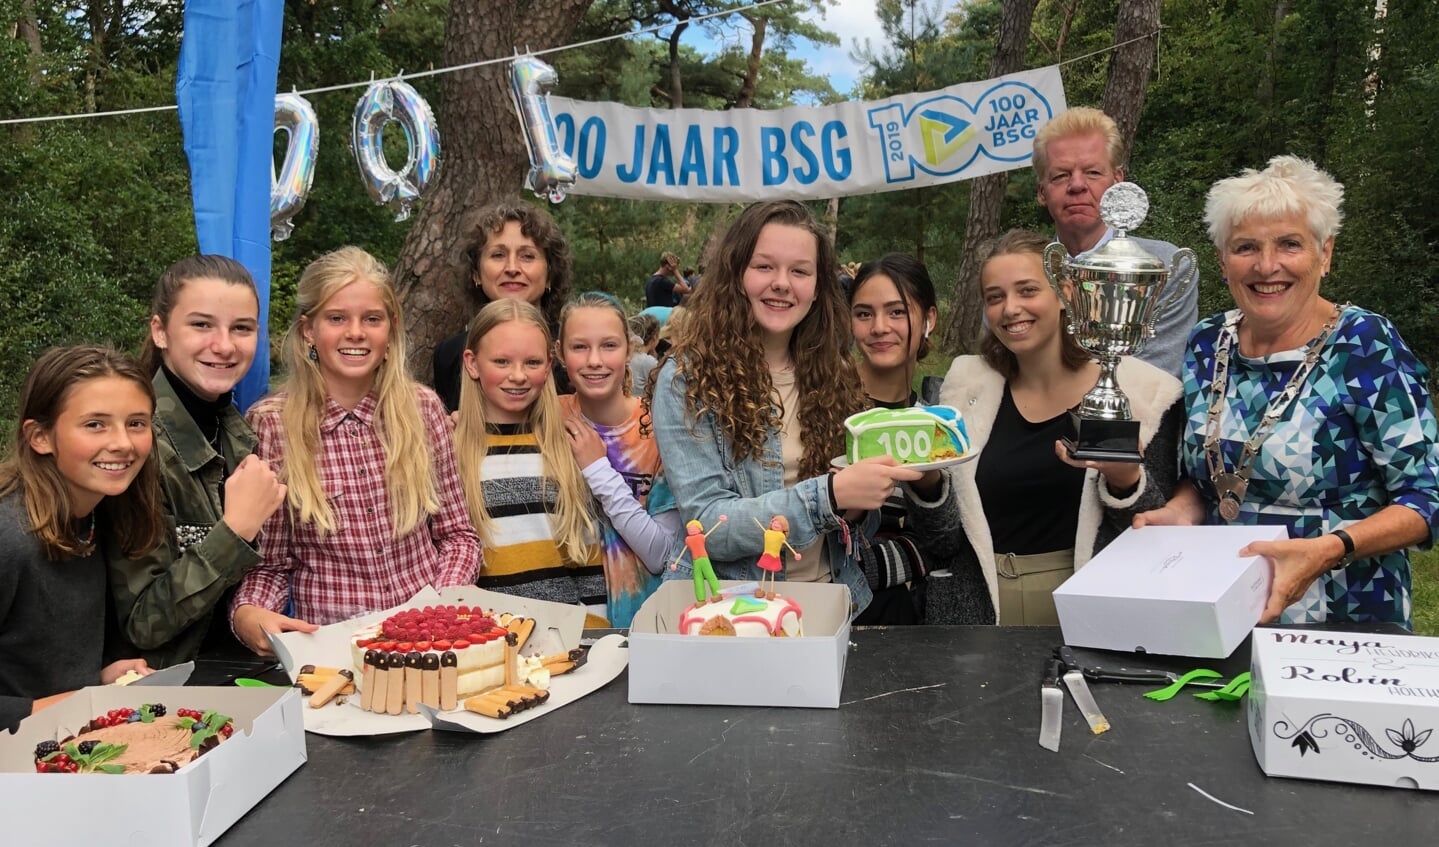 De deelnemers van Heel BSG bakt lieten hun baksels graag proeven aan burgemeester Hafkamp. Naast haar de 2 winnaars Robin Holthuizen en Maya Hendriksen. 